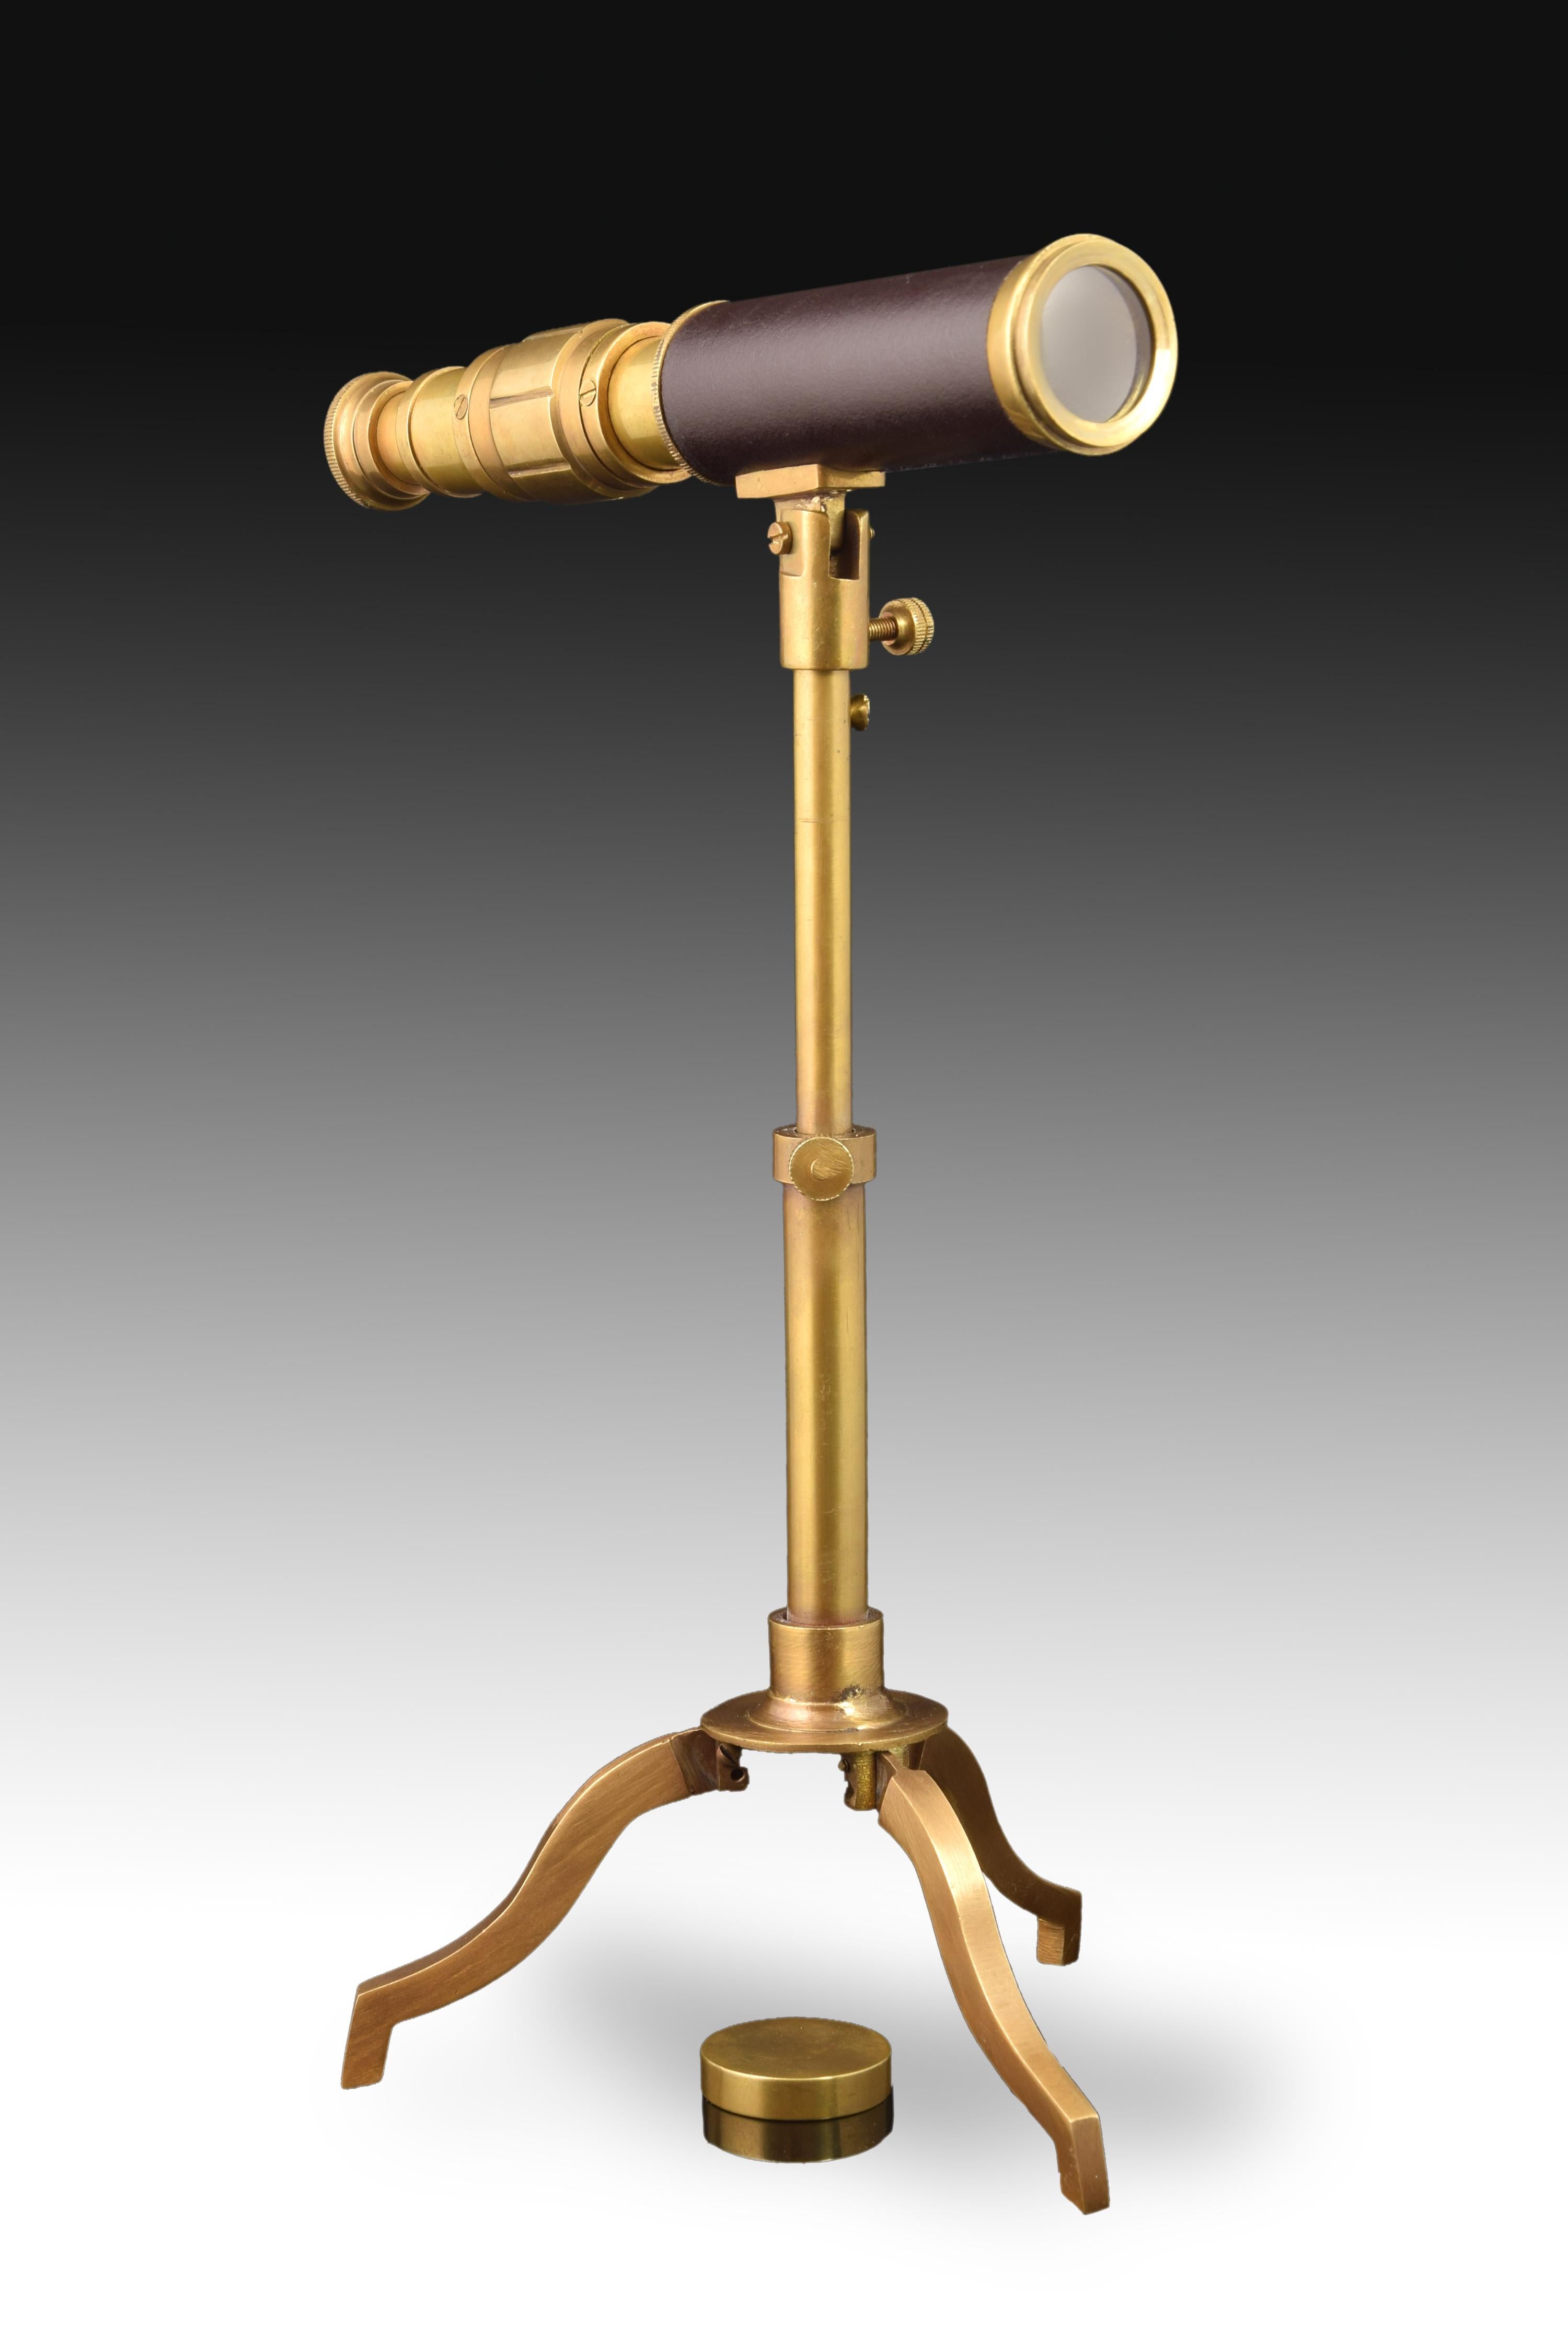 Teleskop mit Stativ. Goldmetallic-Antik-Finish 
Dekorative Verwendung, nicht funktional. 
Teleskop aus vergoldetem Metall, verziert mit einem dunklen Band, steht auf einem dreibeinigen, ebenfalls vergoldeten Metallstativ. Die Sauberkeit der Linien